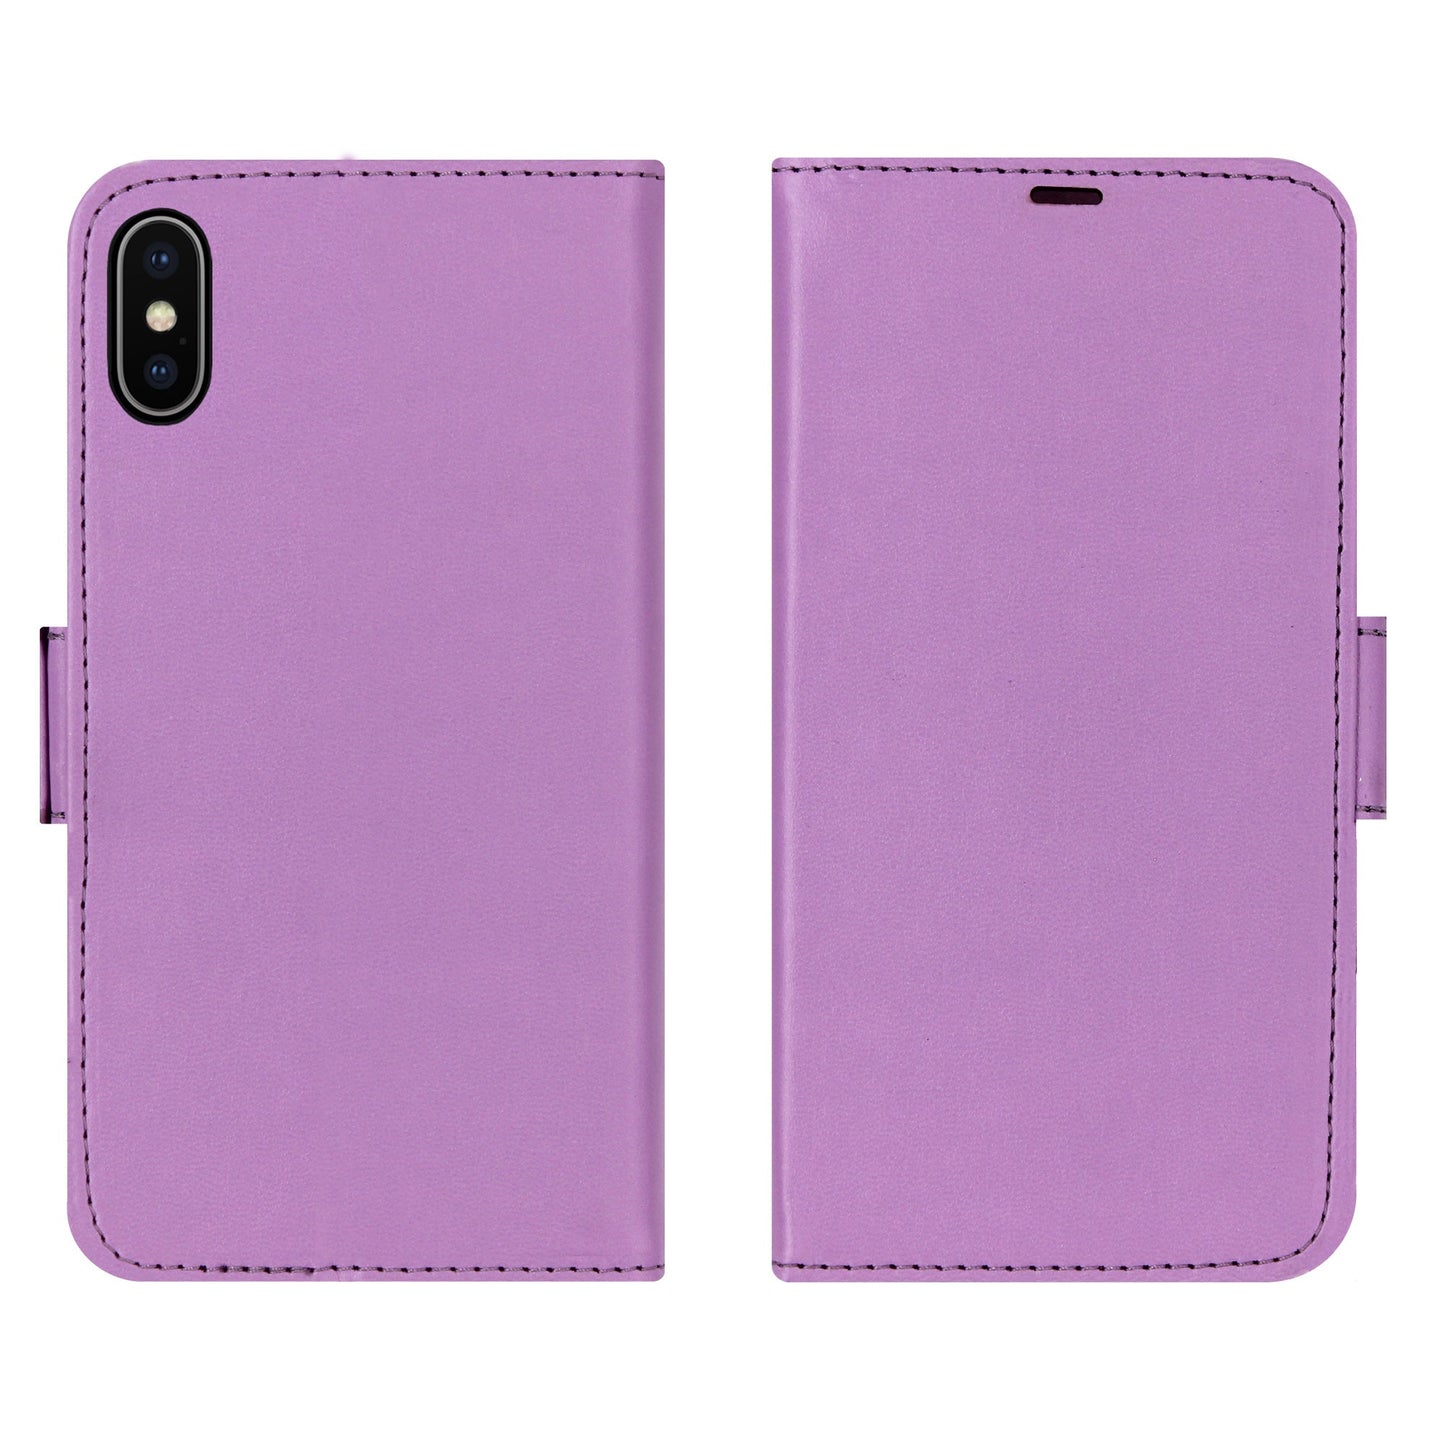 Uni Violett Victor Case für iPhone X/XS